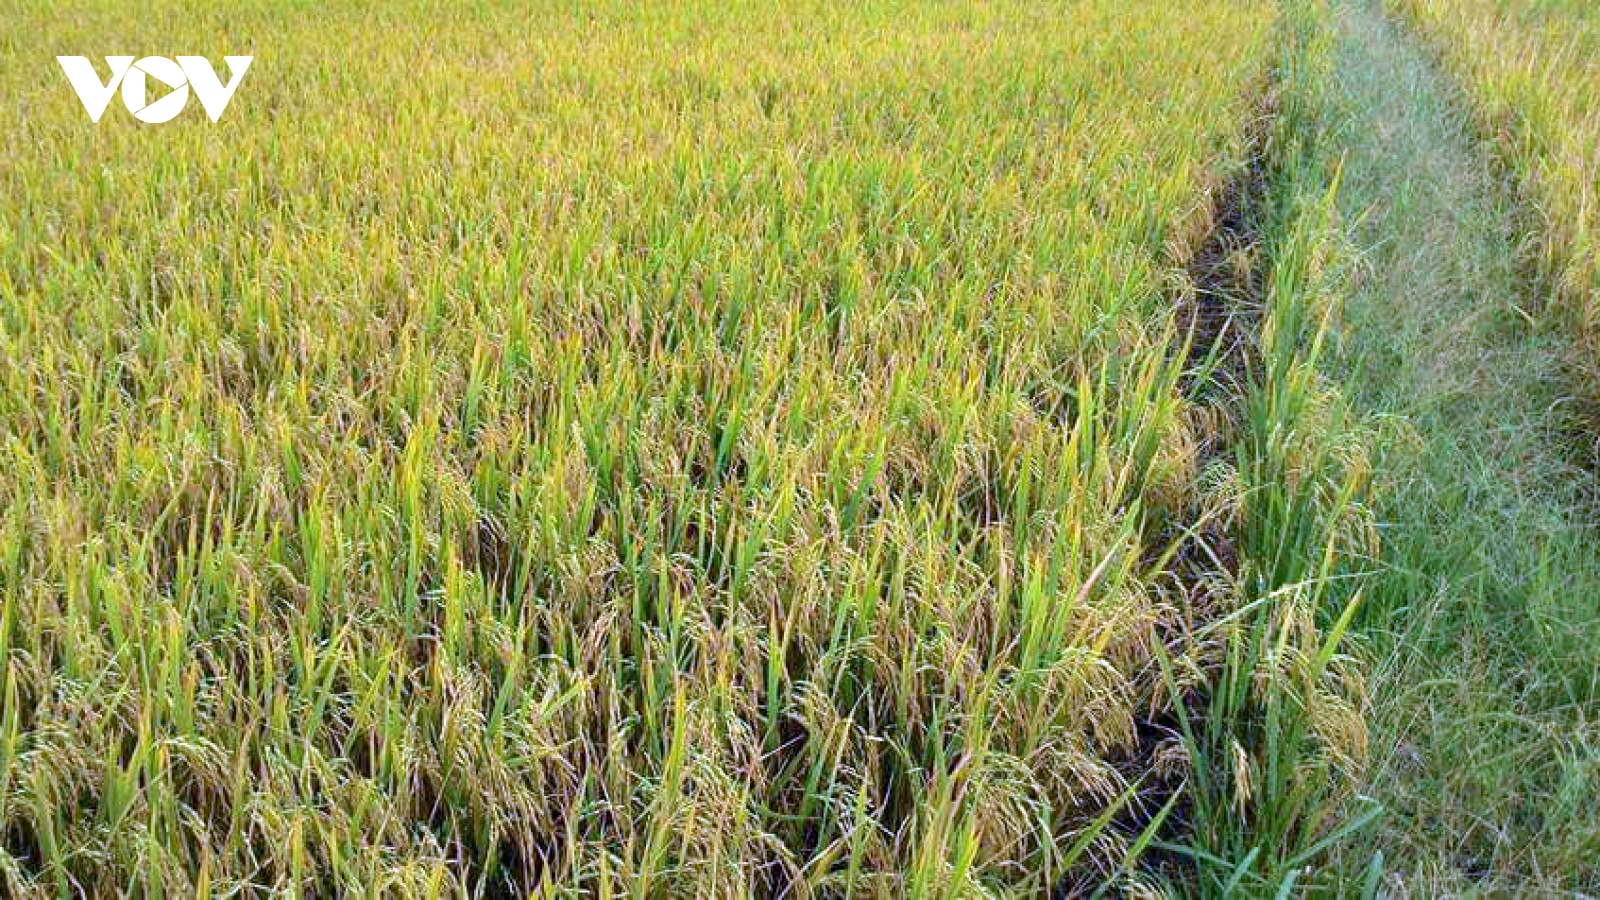 Giá lúa vụ Thu Đông tăng kỉ lục, nông dân Tiền Giang lãi khoảng 40 triệu đồng/ha